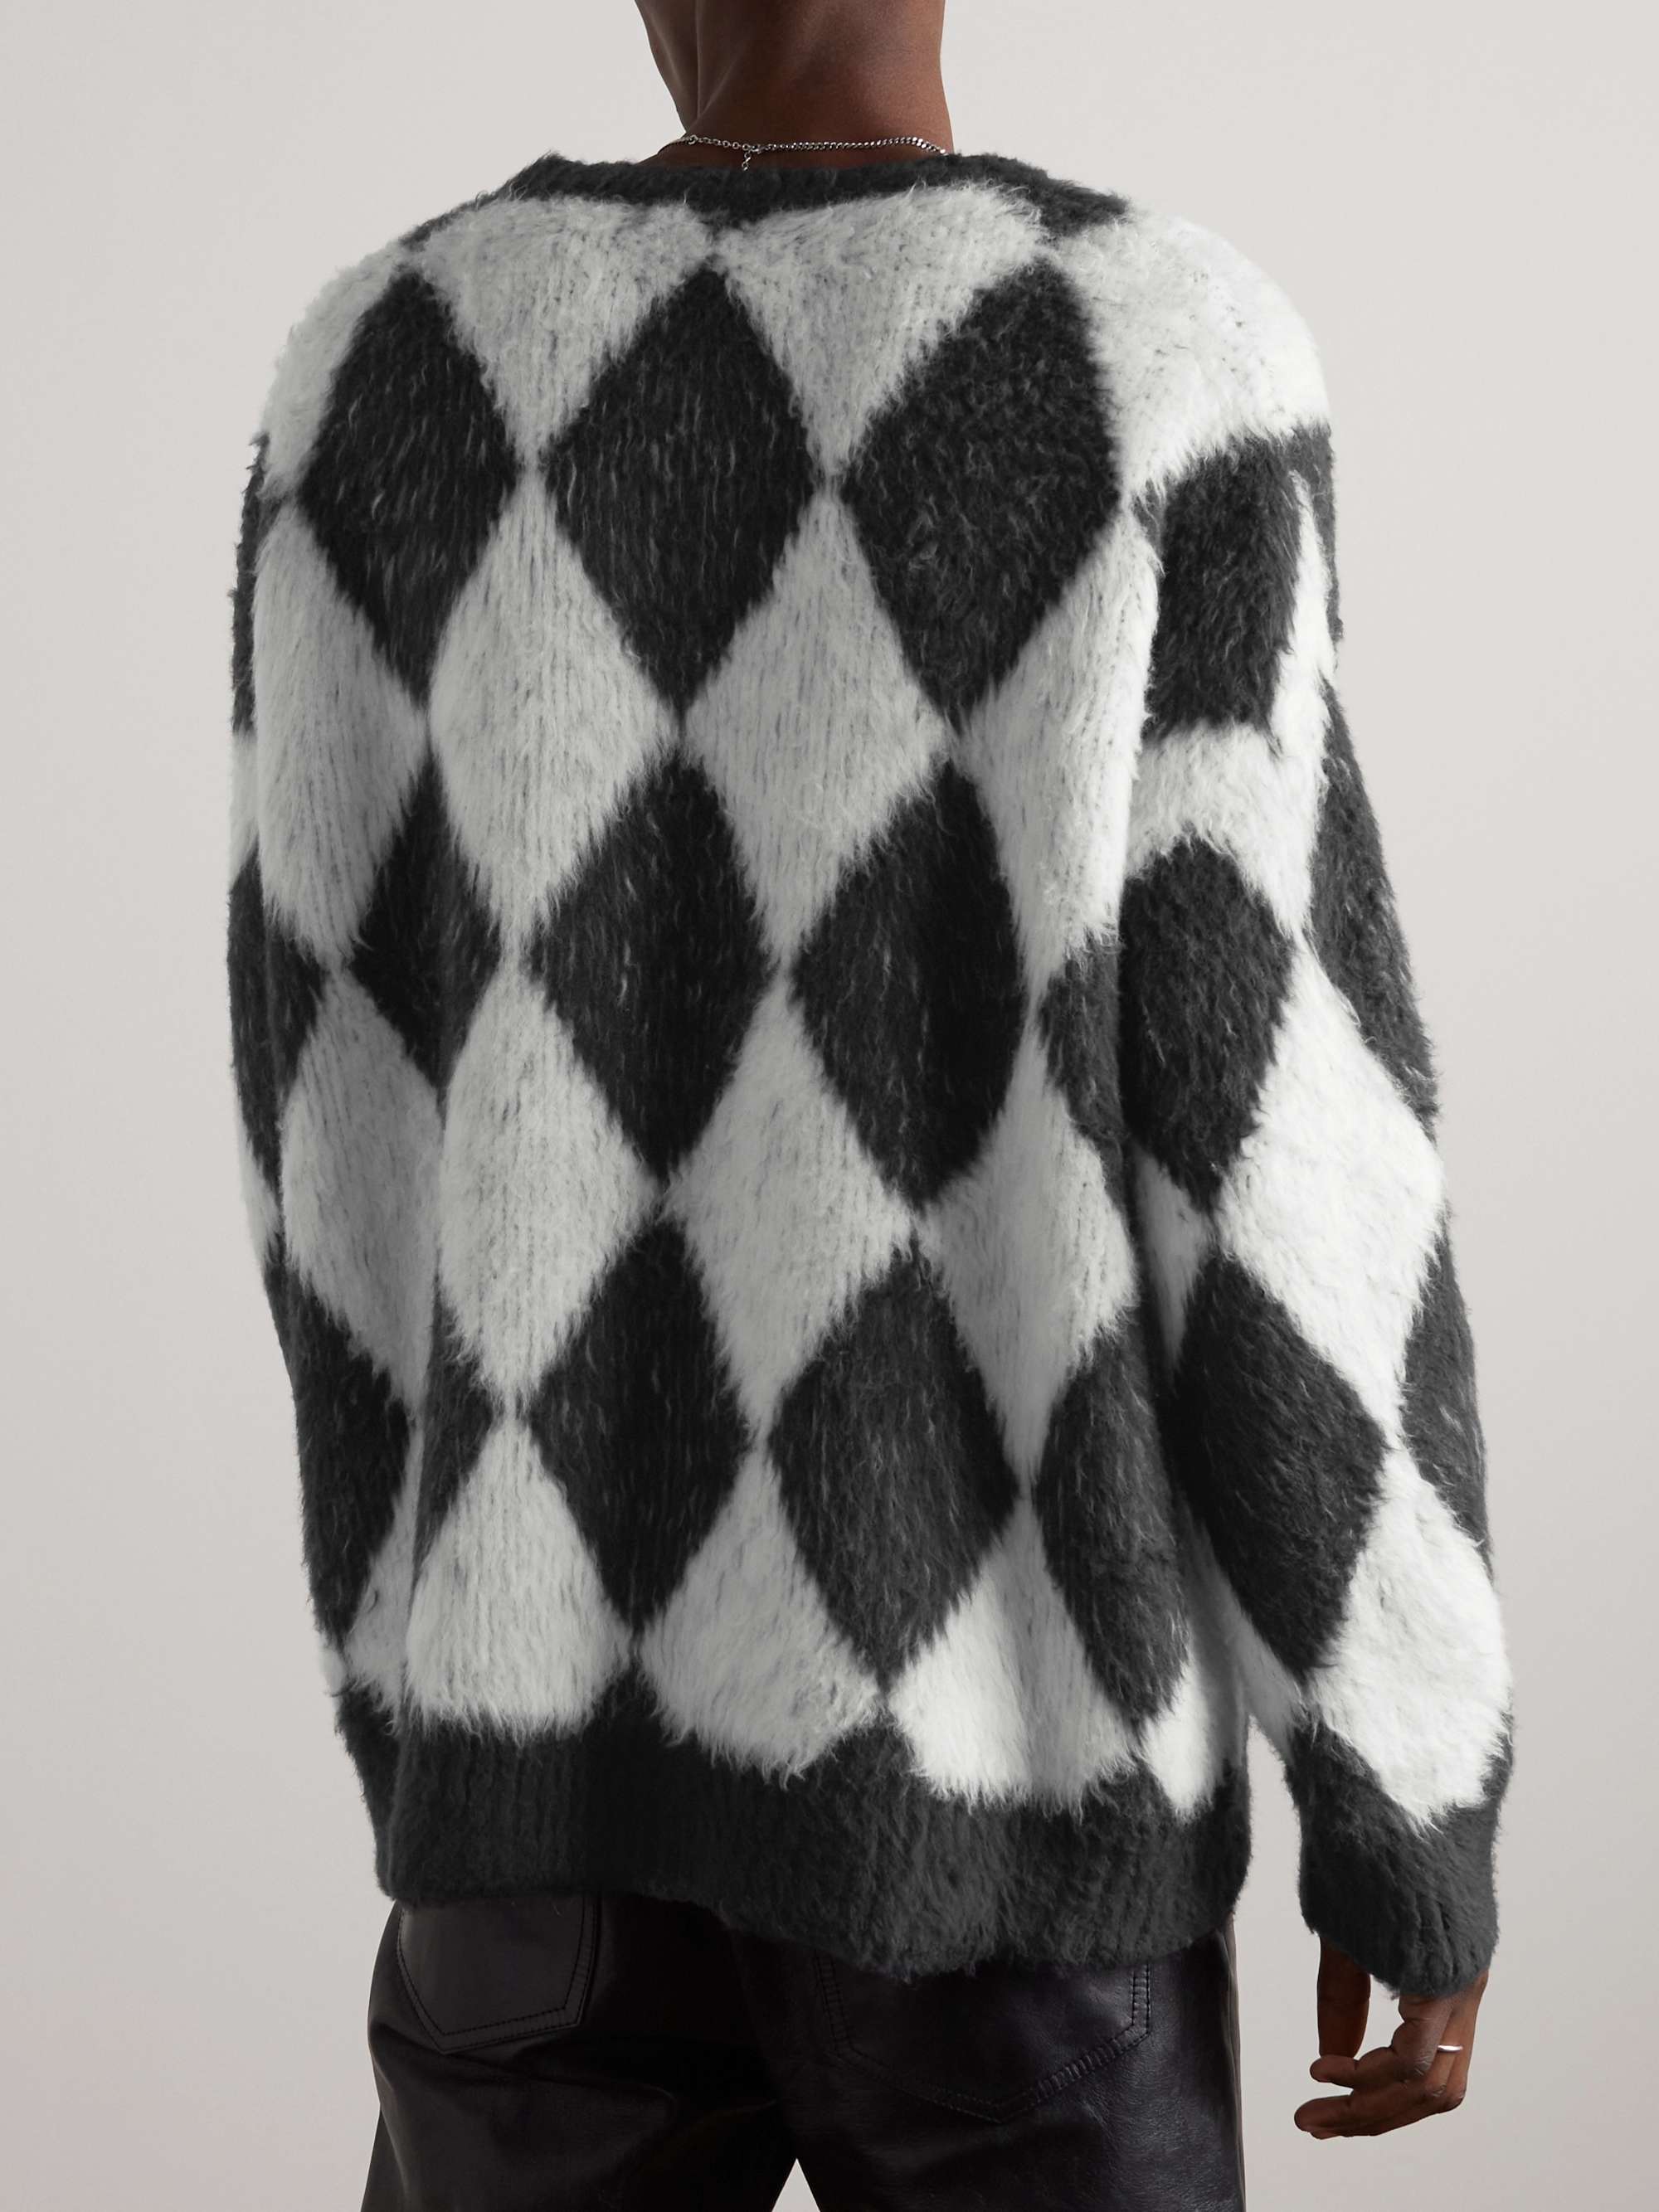 CELINE HOMME Argyle Brushed Cotton-Blend Sweater